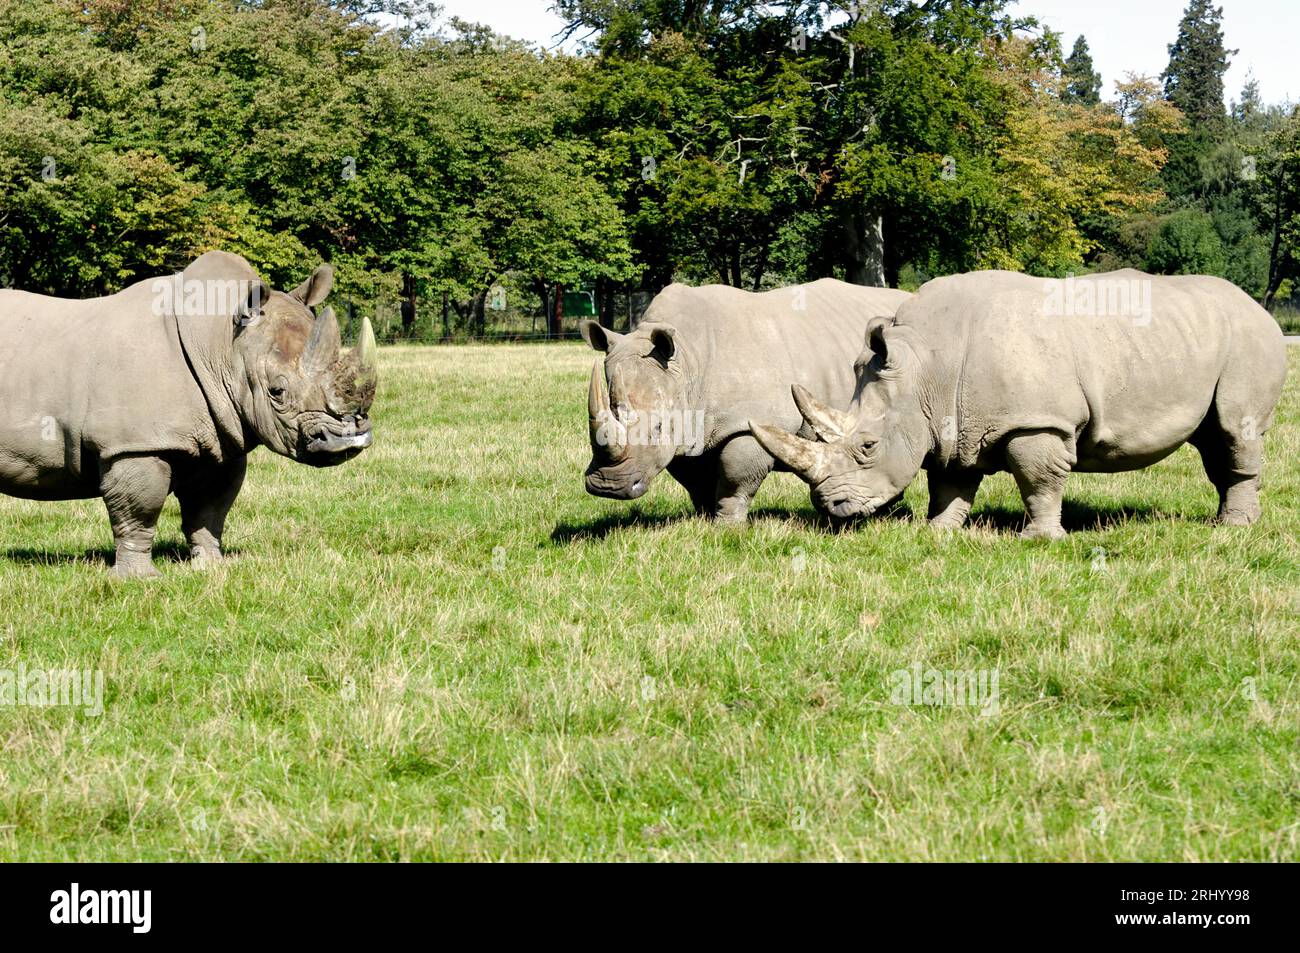 Groupe de rhinocéros sont debout et regardant sur l'herbe verte Banque D'Images